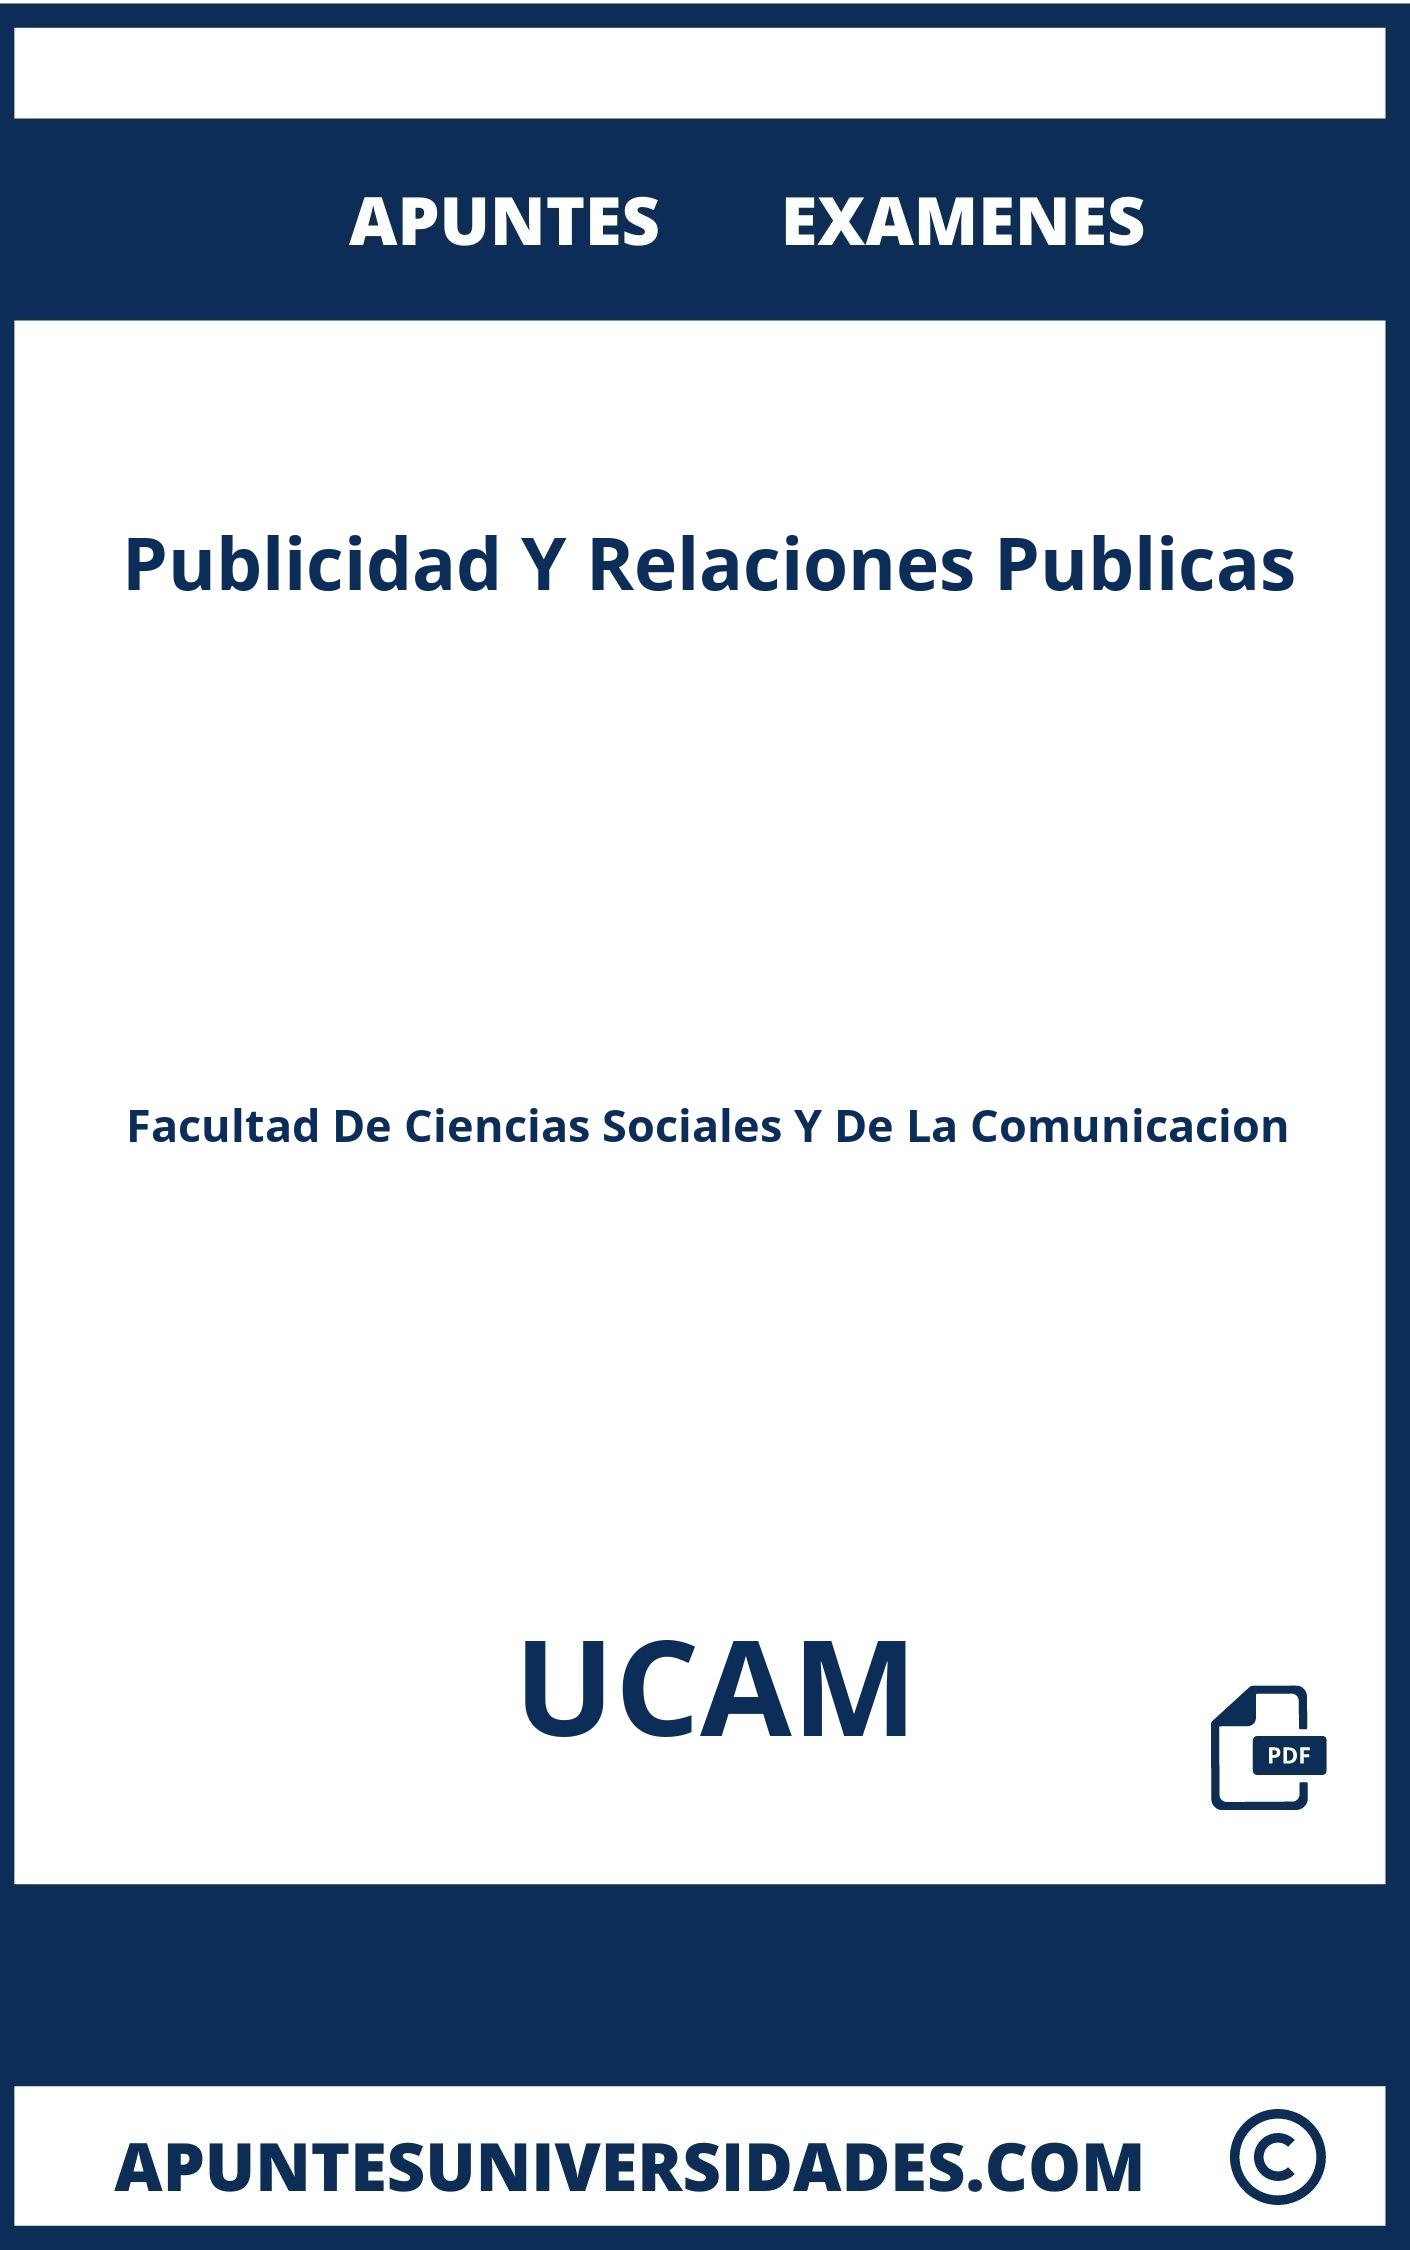 Apuntes Publicidad Y Relaciones Publicas UCAM y Examenes